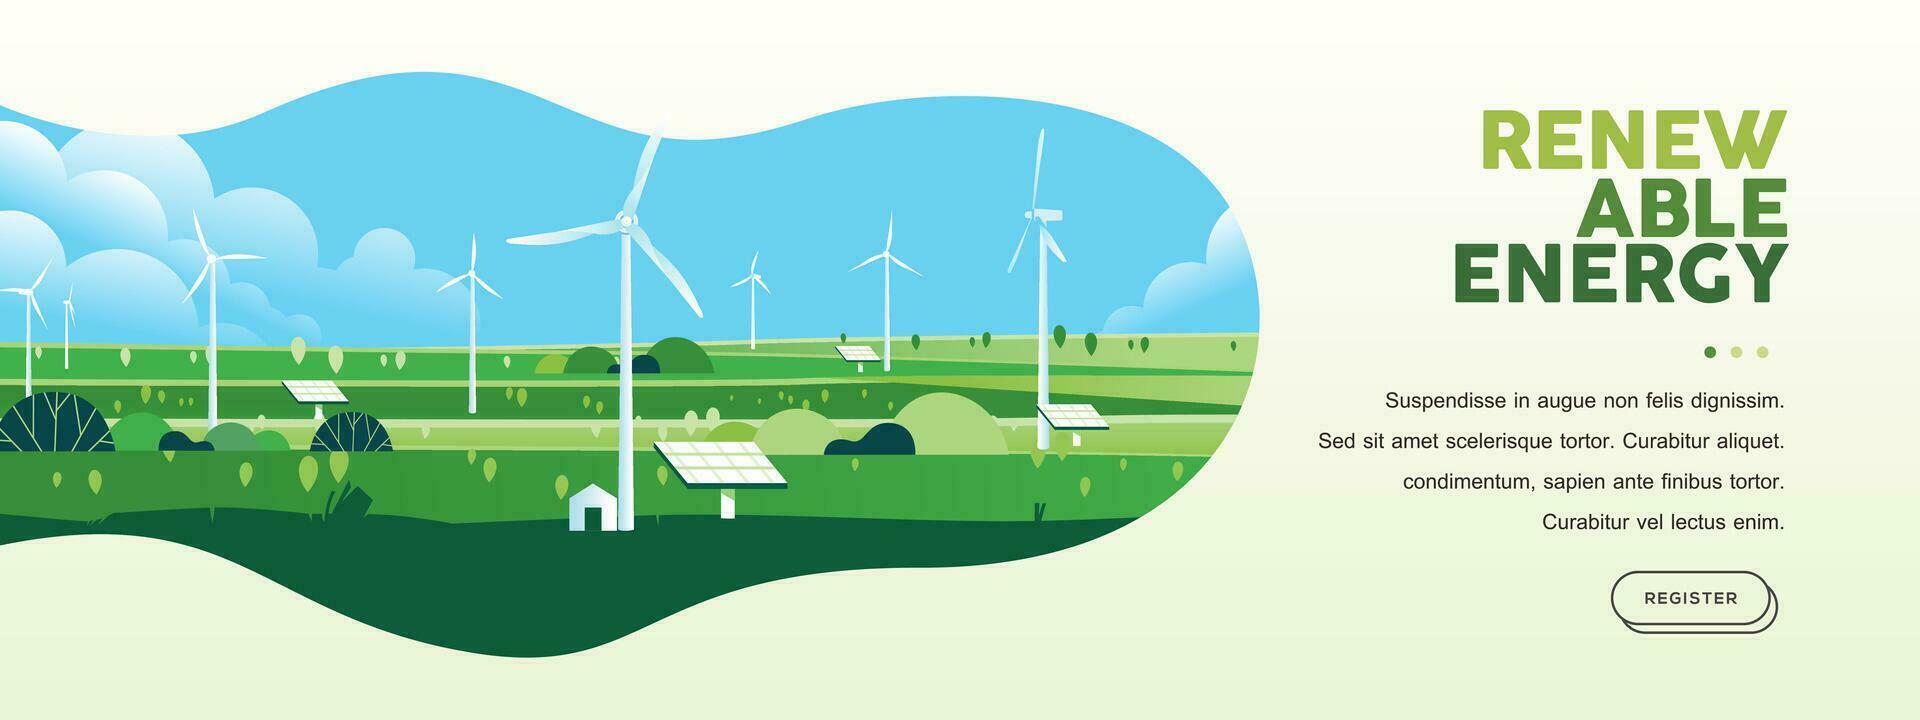 grön kullar natur landskap eco vänlig teknologi, vind turbin, förnybar alternativ energi, hållbar miljö baner vektor